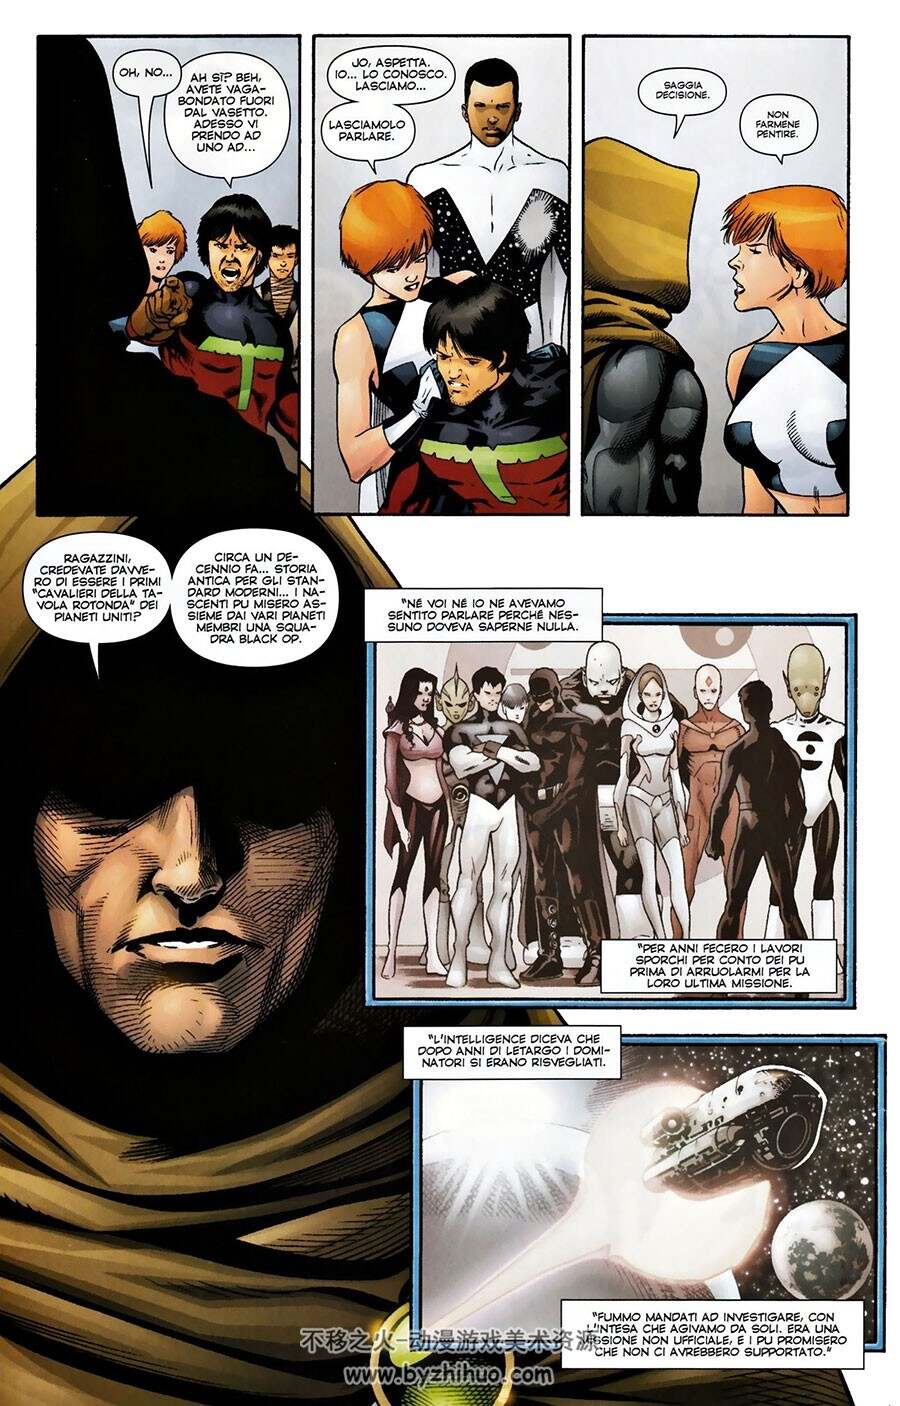 Supergirl E La Legione Dei Super Eroi 第5册 DC漫画超级少女 意大利语版